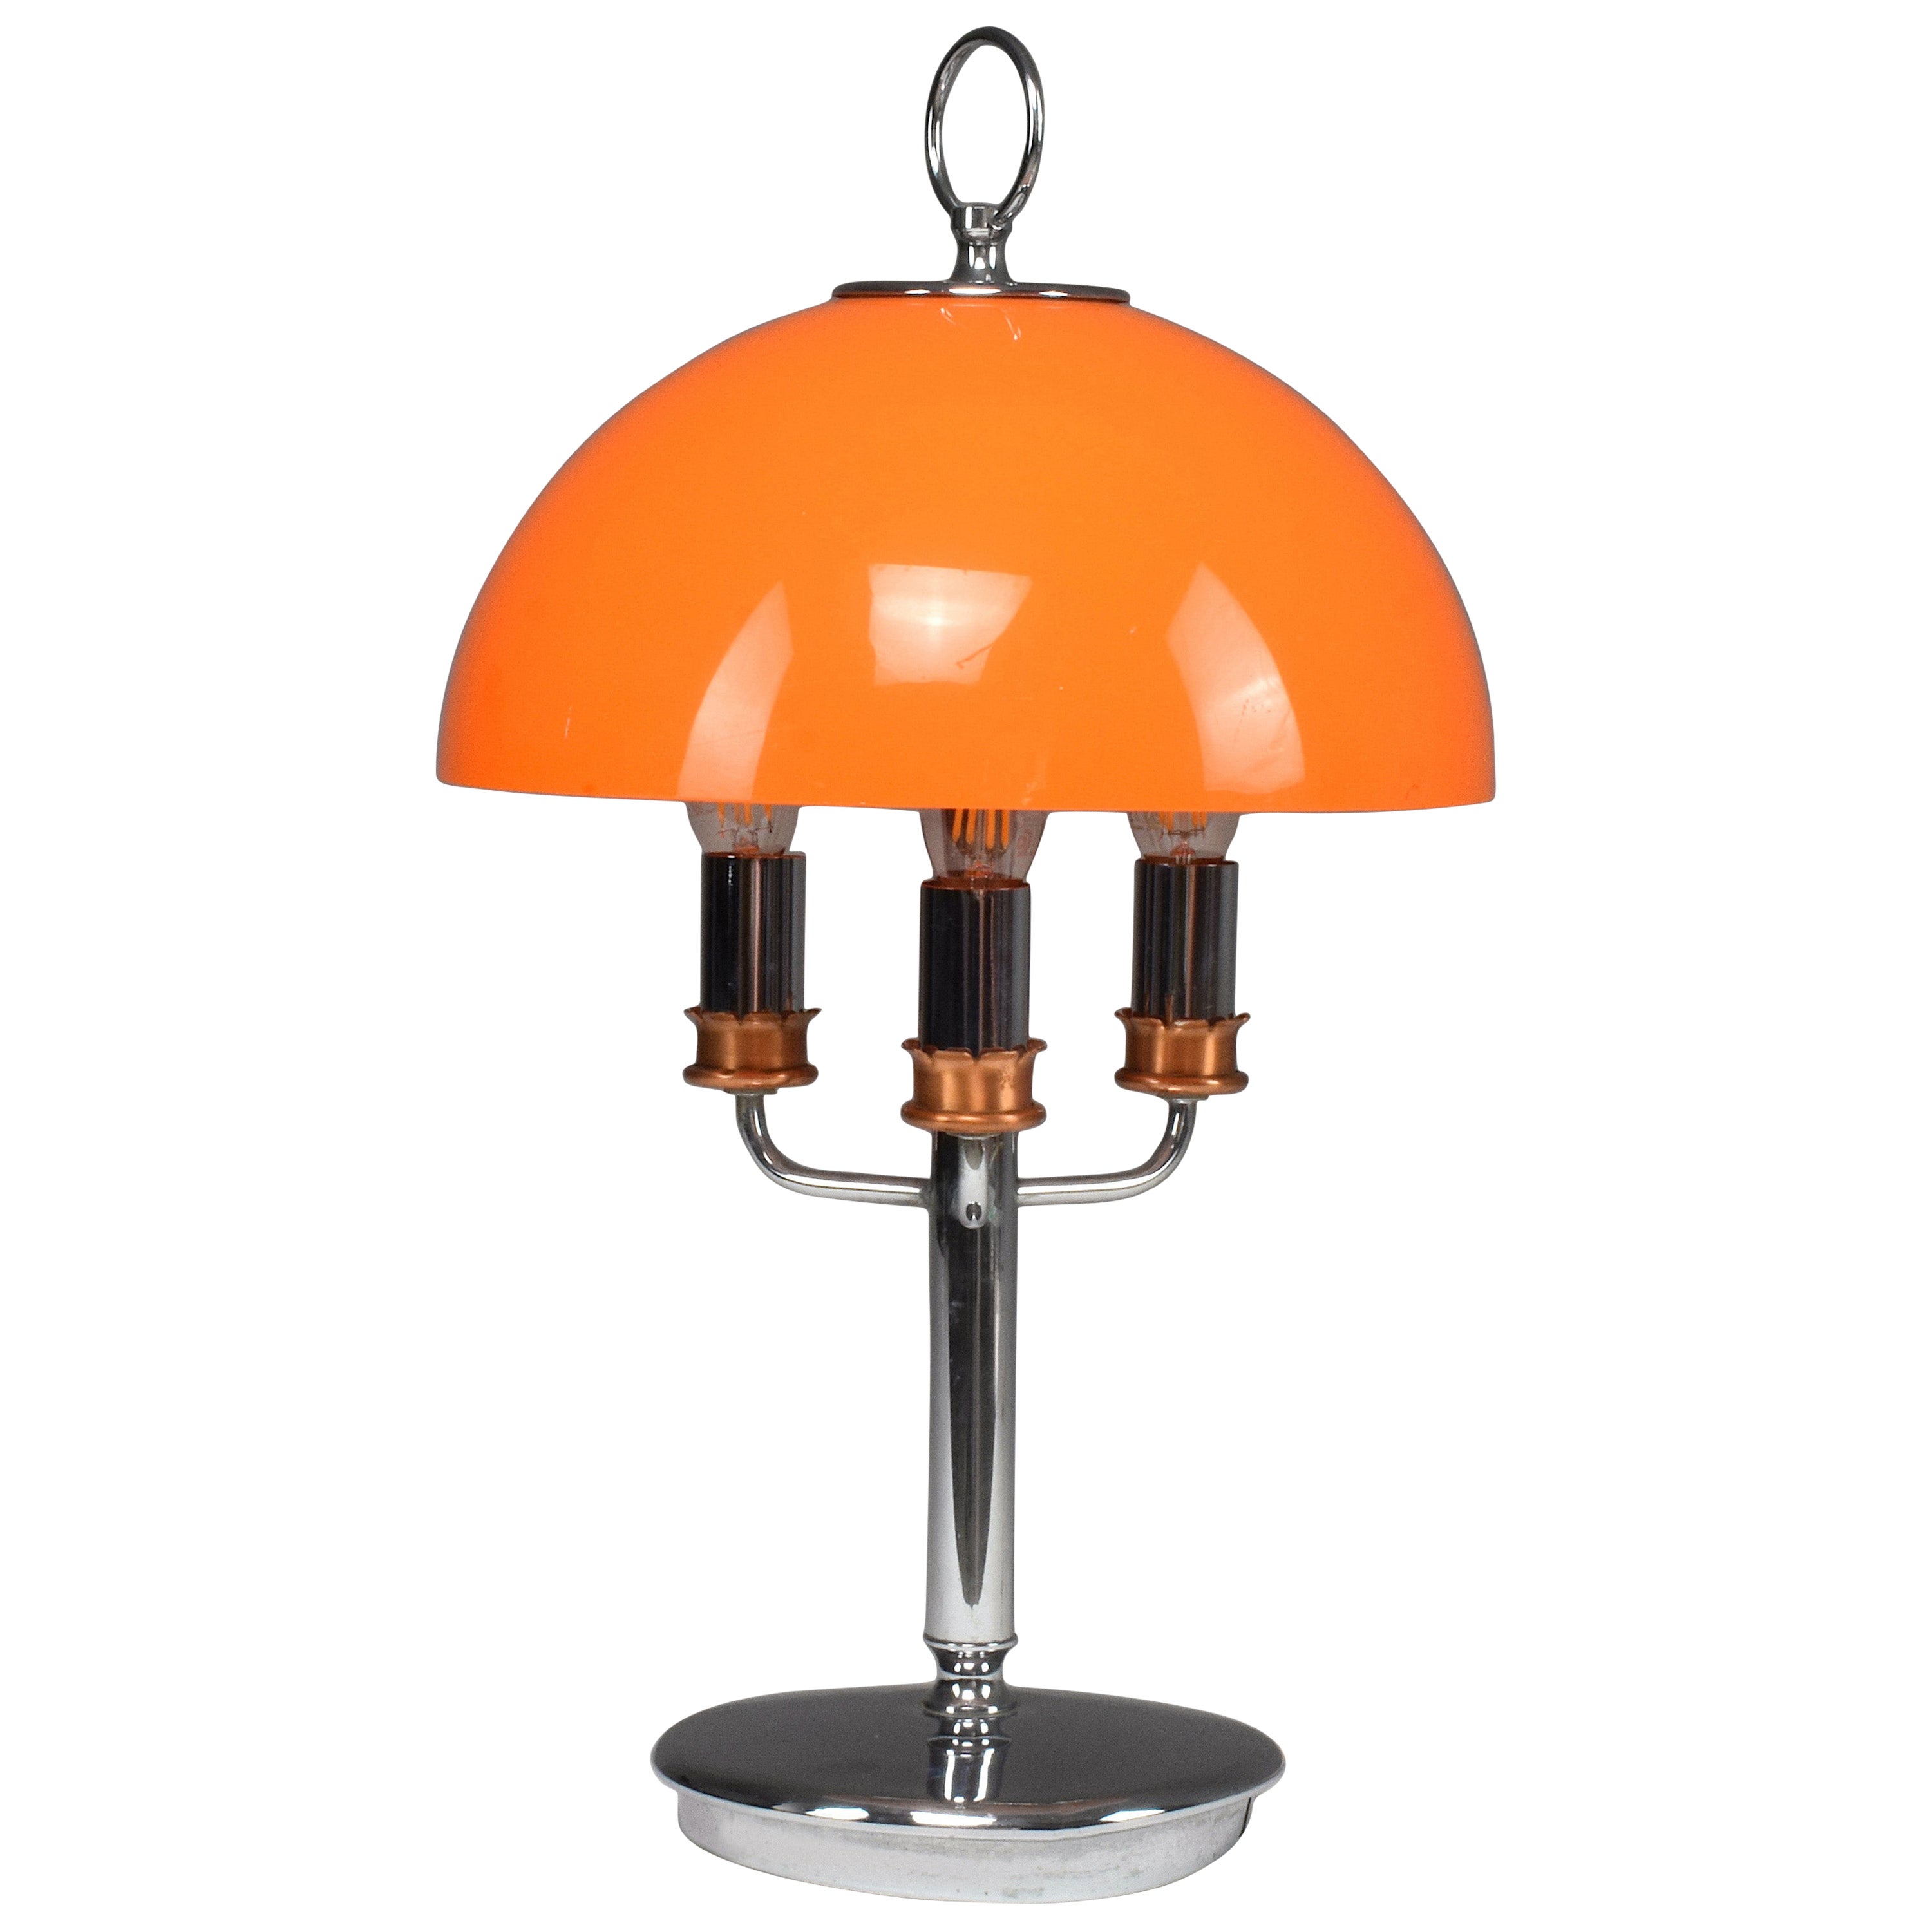 Orange Mushroom Lamps - 37 For Sale on 1stDibs